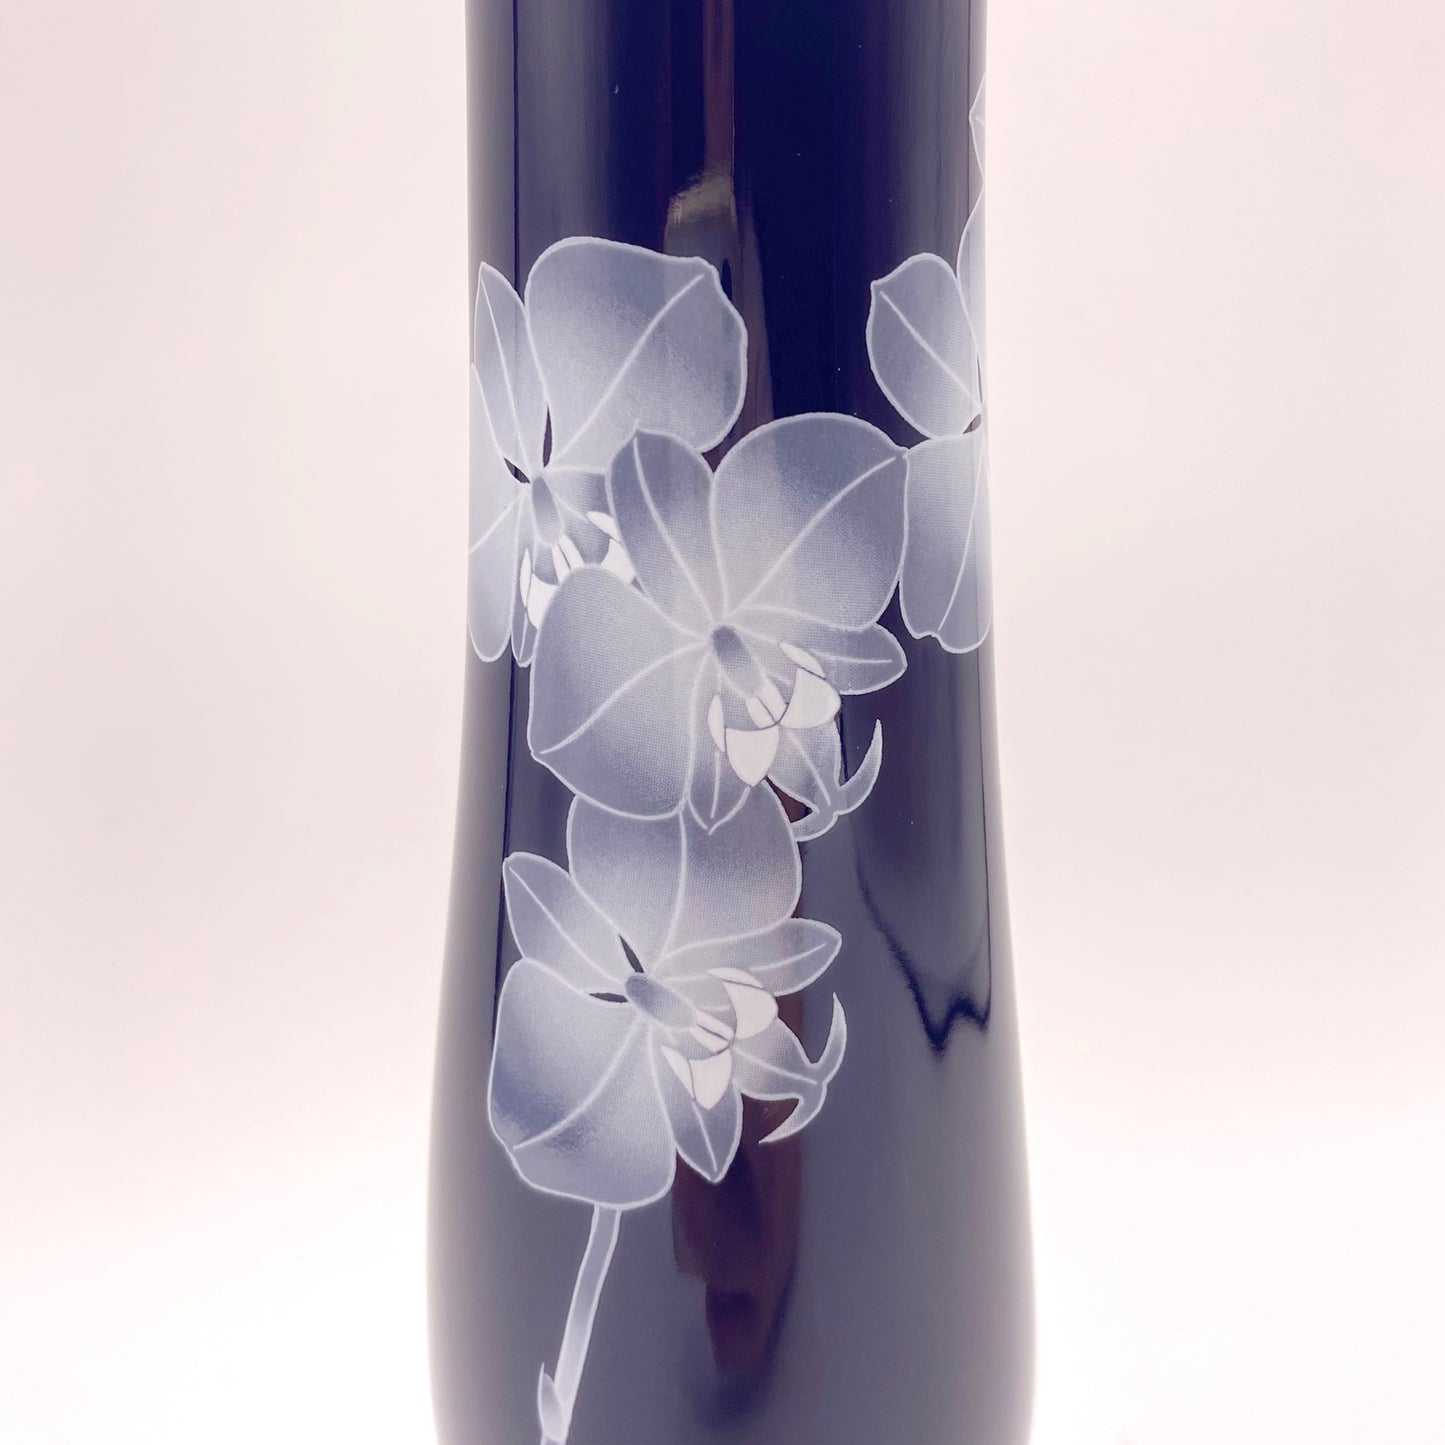 Koransha Porcelain Vase | Arita Ware